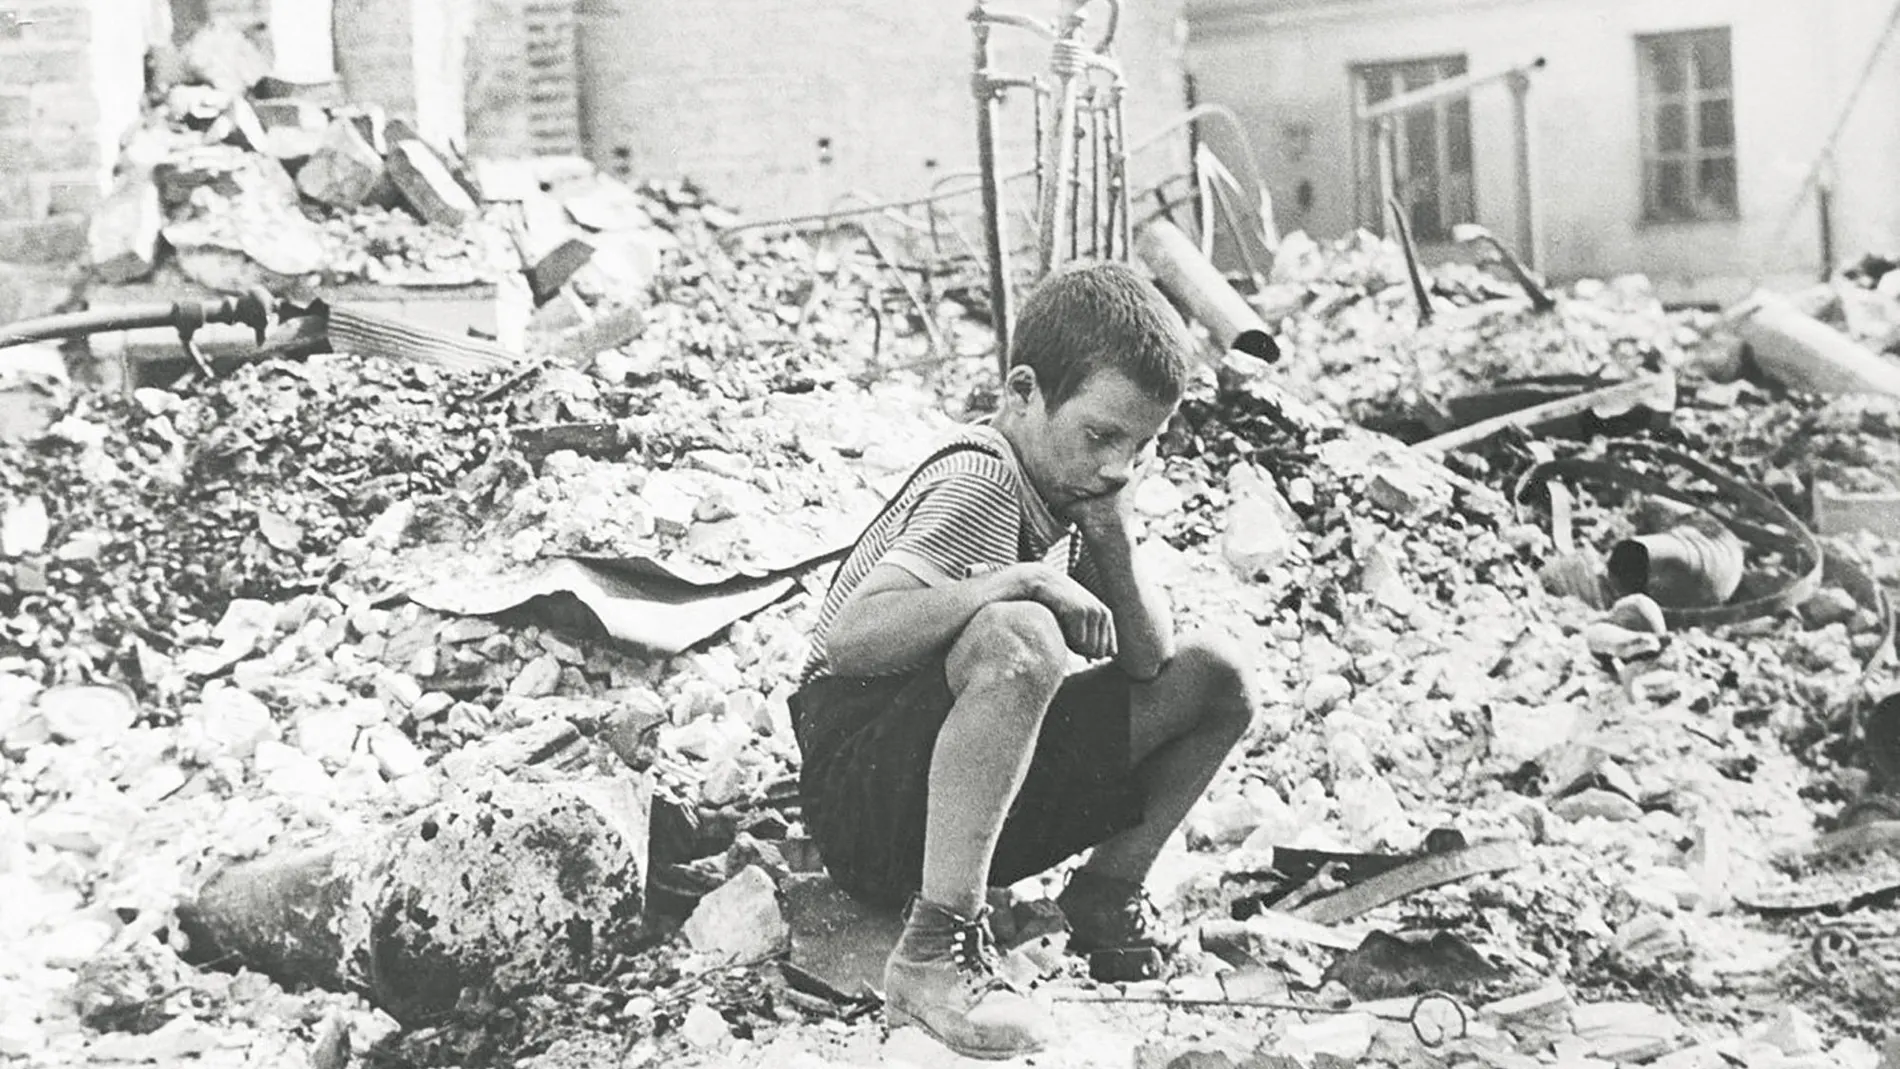 Un pequeño desolado entre los escombros tras el intenso bombardeo de Hitler sobre la capital polaca